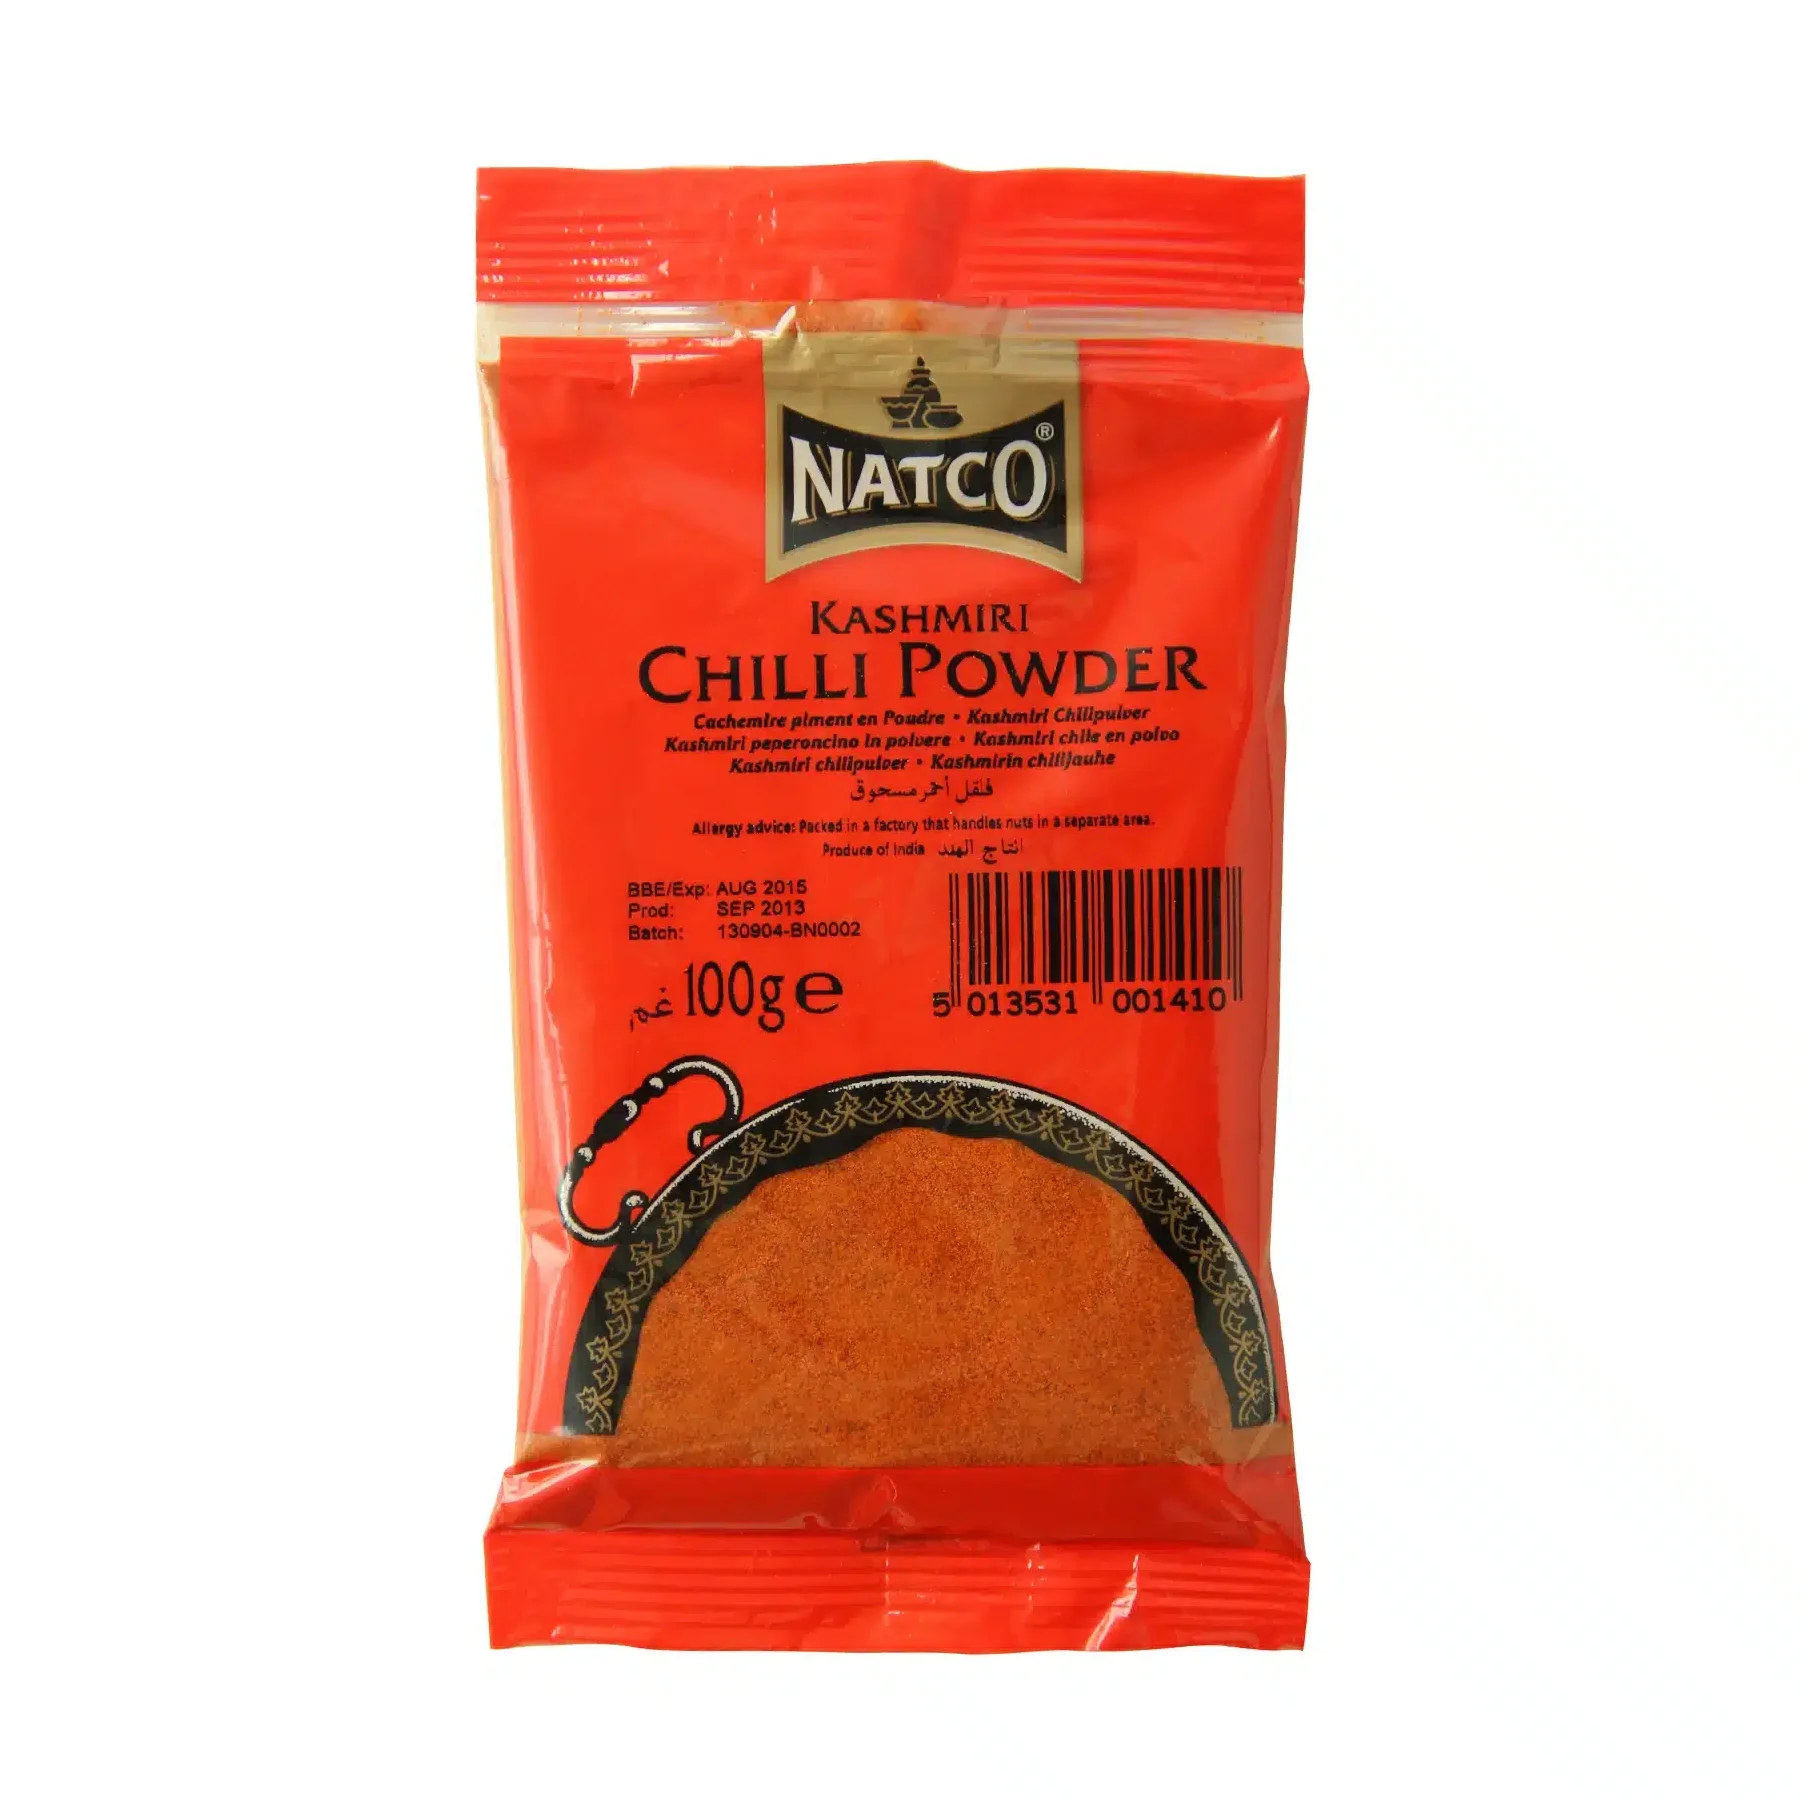 Natco Chilli Powder Kashmiri 20x100G